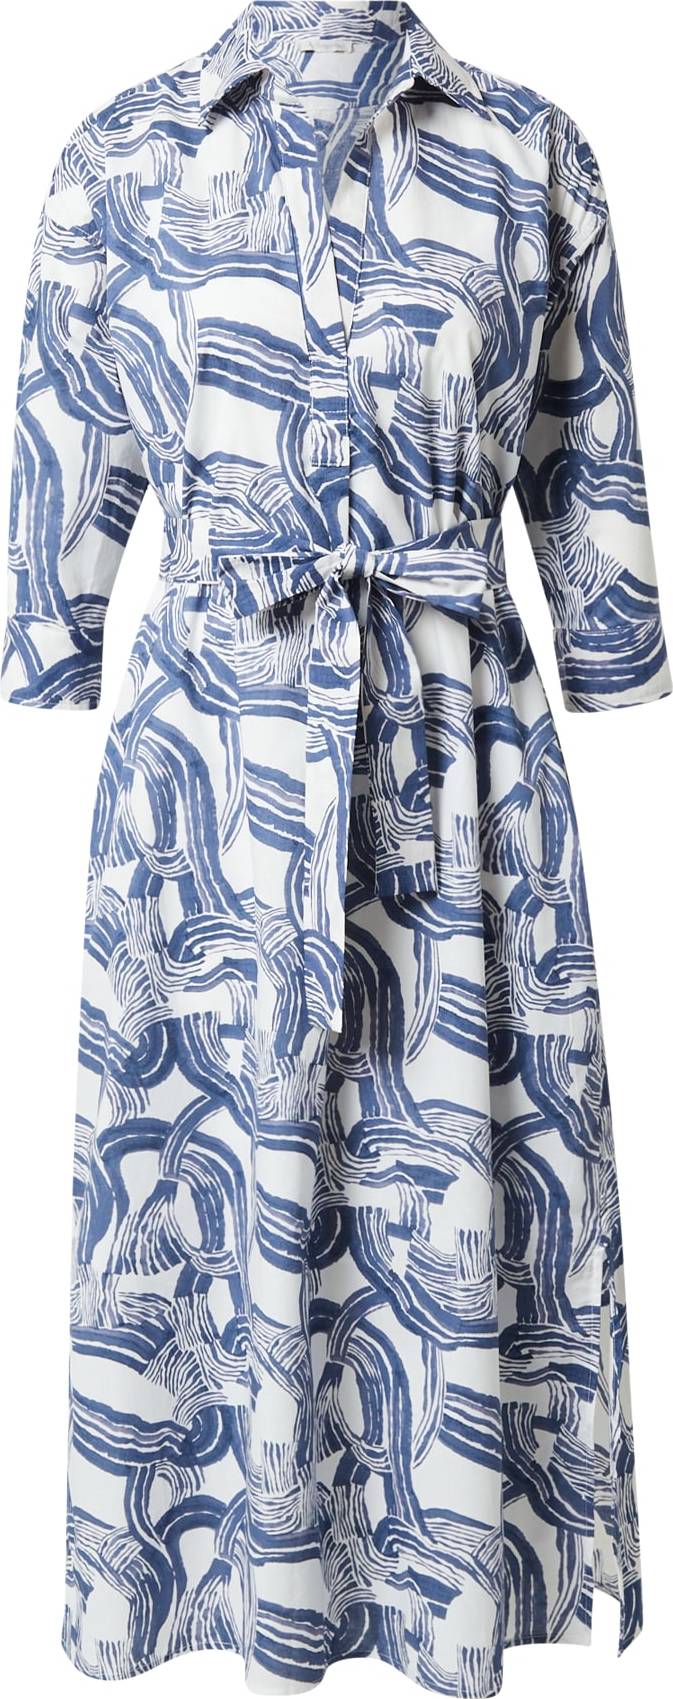 JcSophie Košilové šaty 'Maya' modrá / bílá